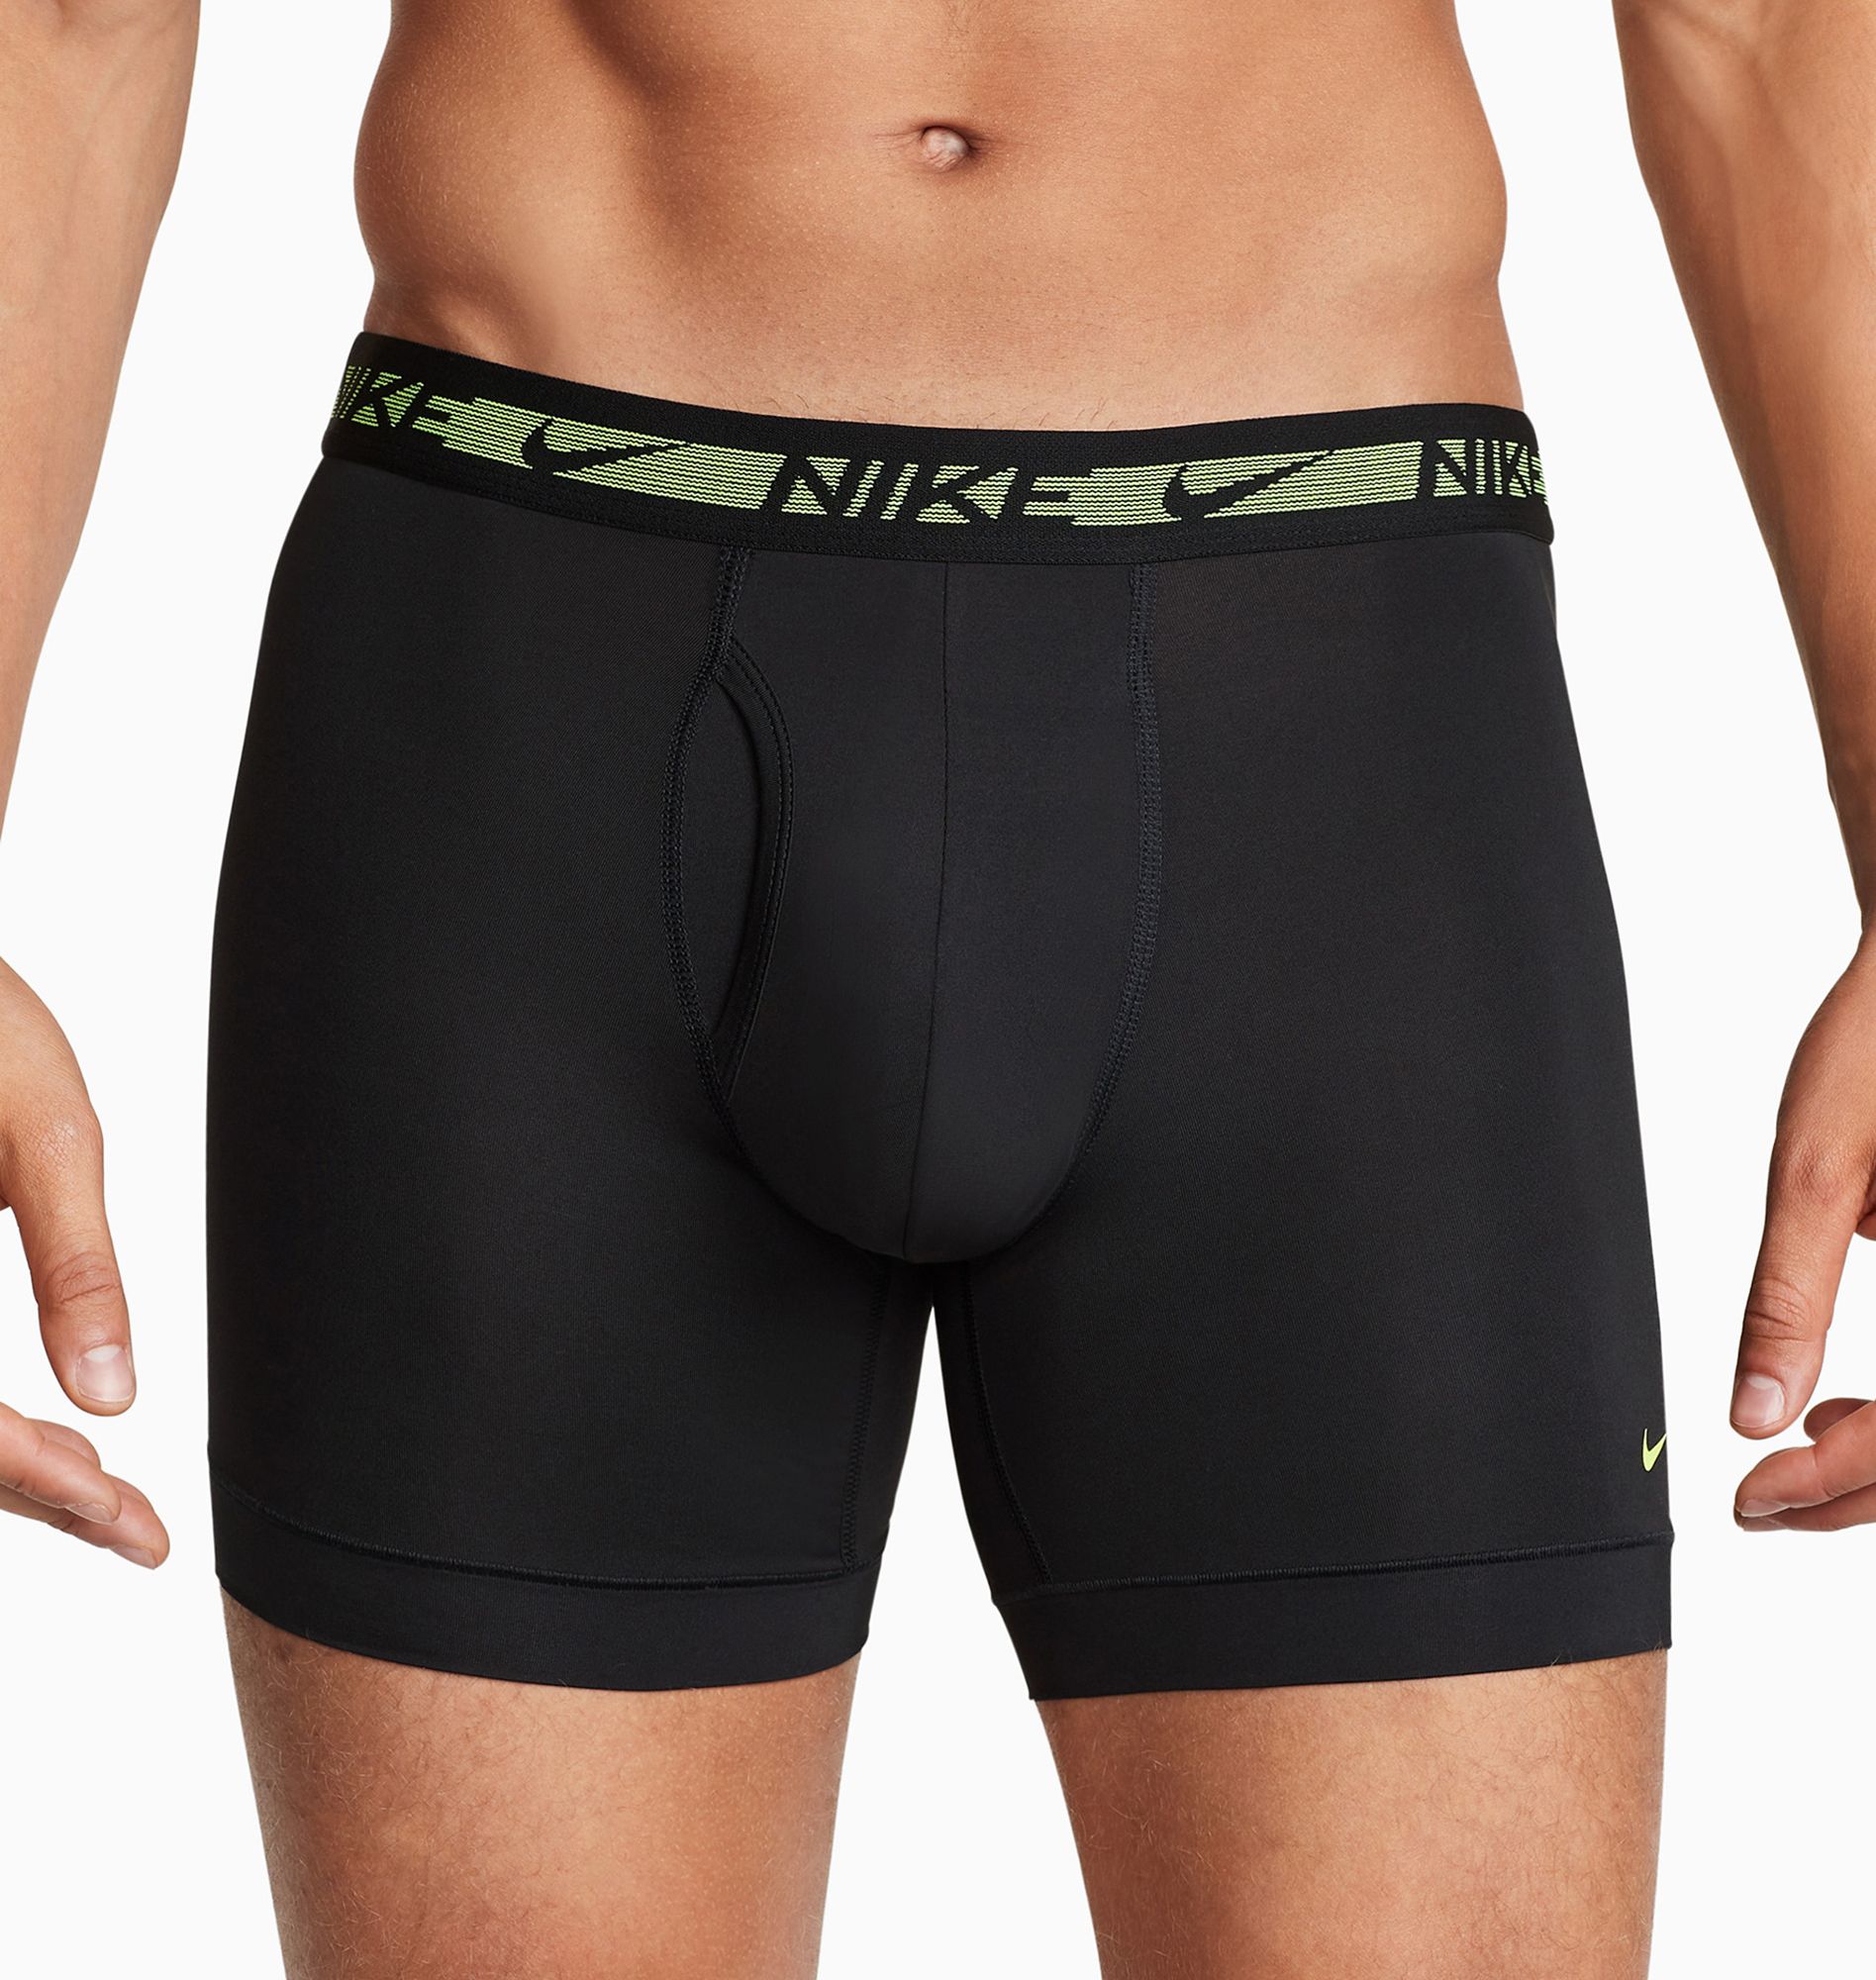 Nike Underwear ESSENTIAL BOXER BRIEF 3 PACK - Pants - black/siren